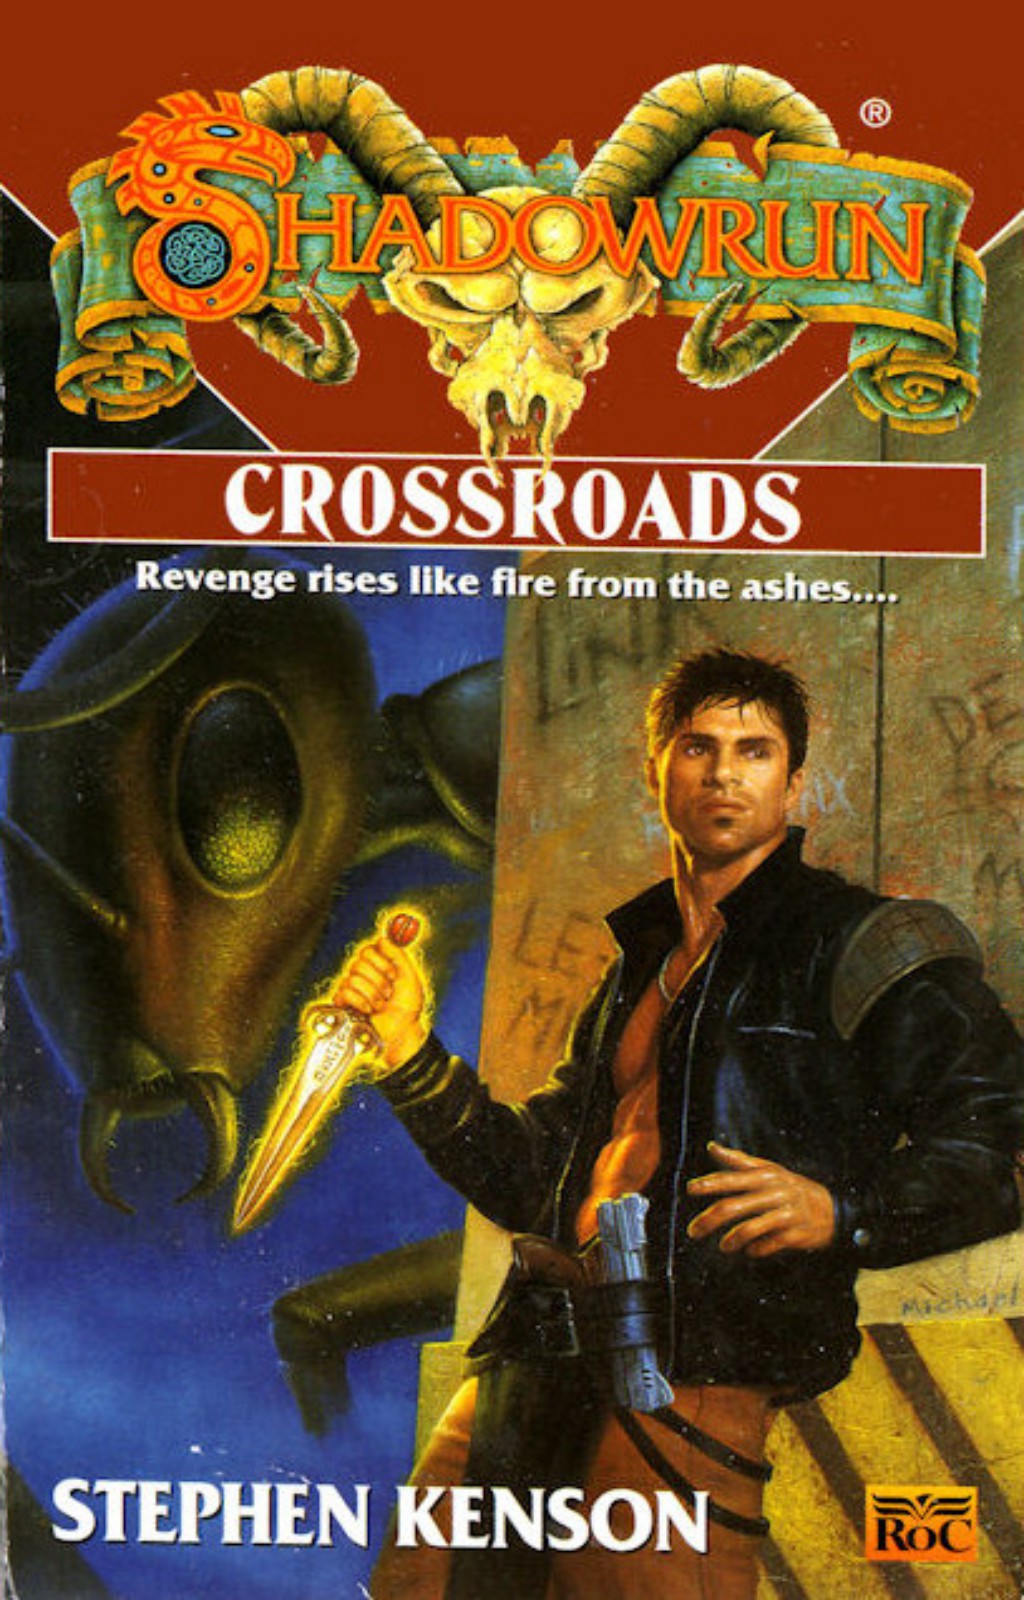 Crossroads by Stephen Kenson